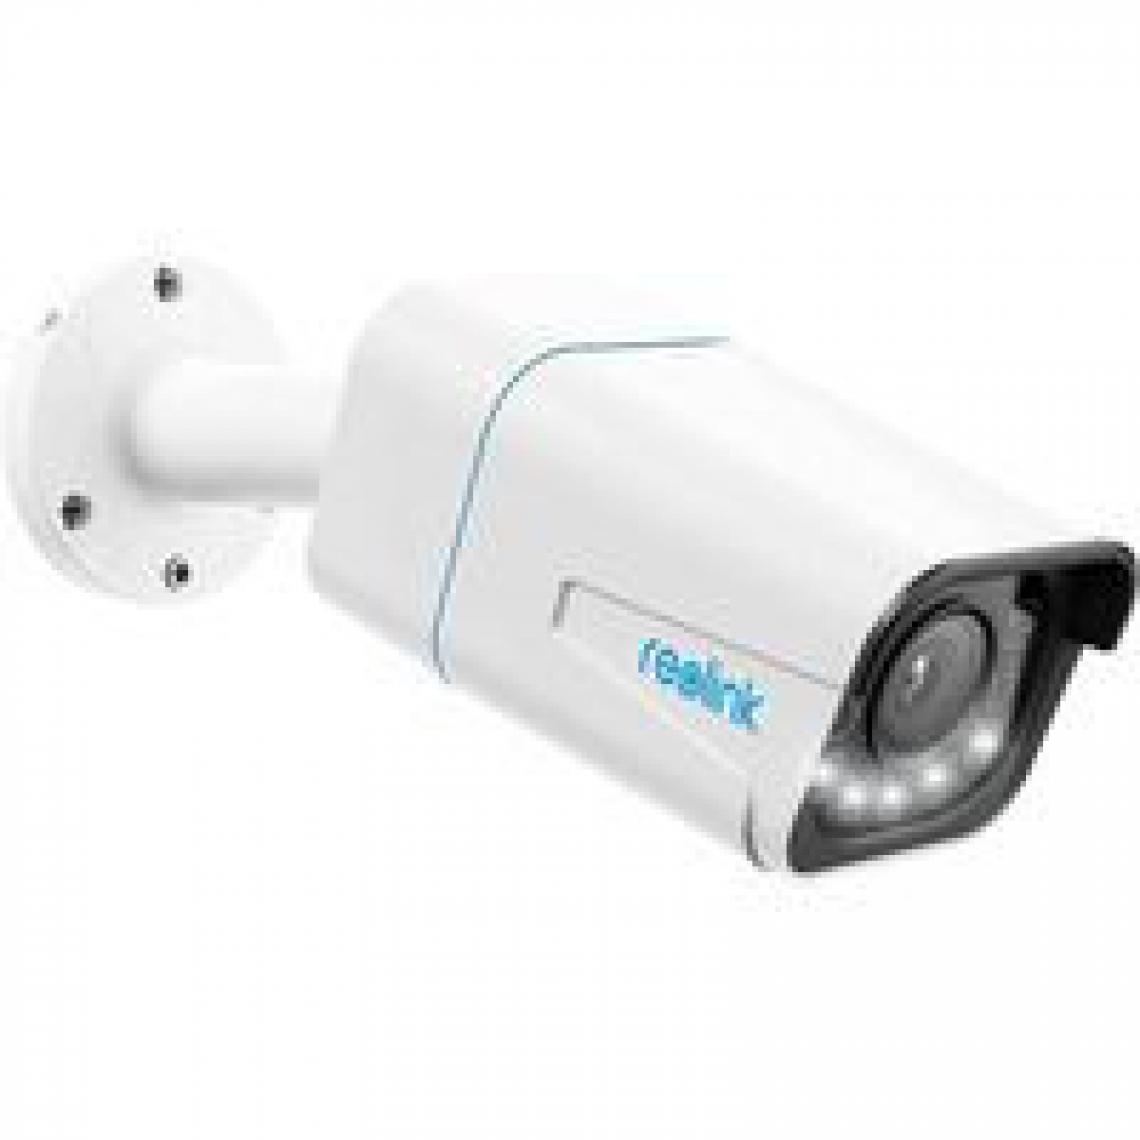 Reolink - Caméra Surveillance Extérieure PoE 4K - RLC-811A Zoom Optique 5X,Vision Nocturne en Couleur, Audio Bidirectionnel, Détection de Personne/Véhicule - Caméra de surveillance connectée